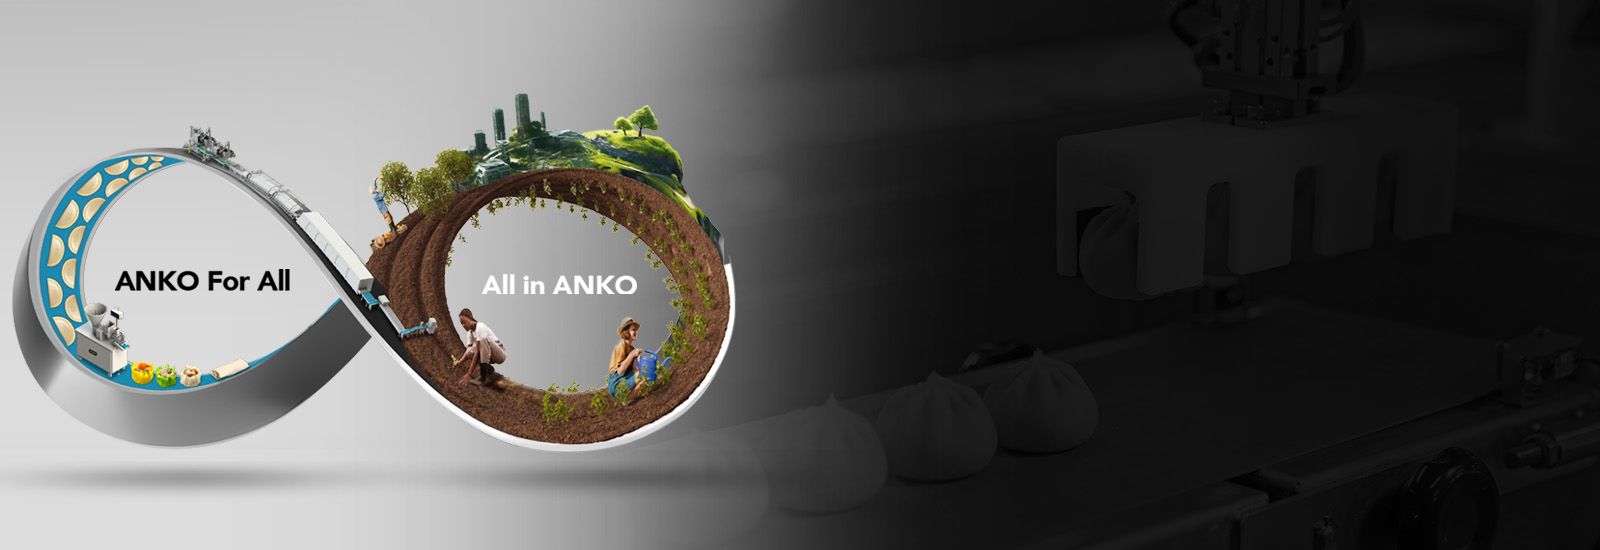 ANKO Стартира Линия за Интеграция   Как Интегрираните Производствени Линии подобряват вашия хранителен бизнес